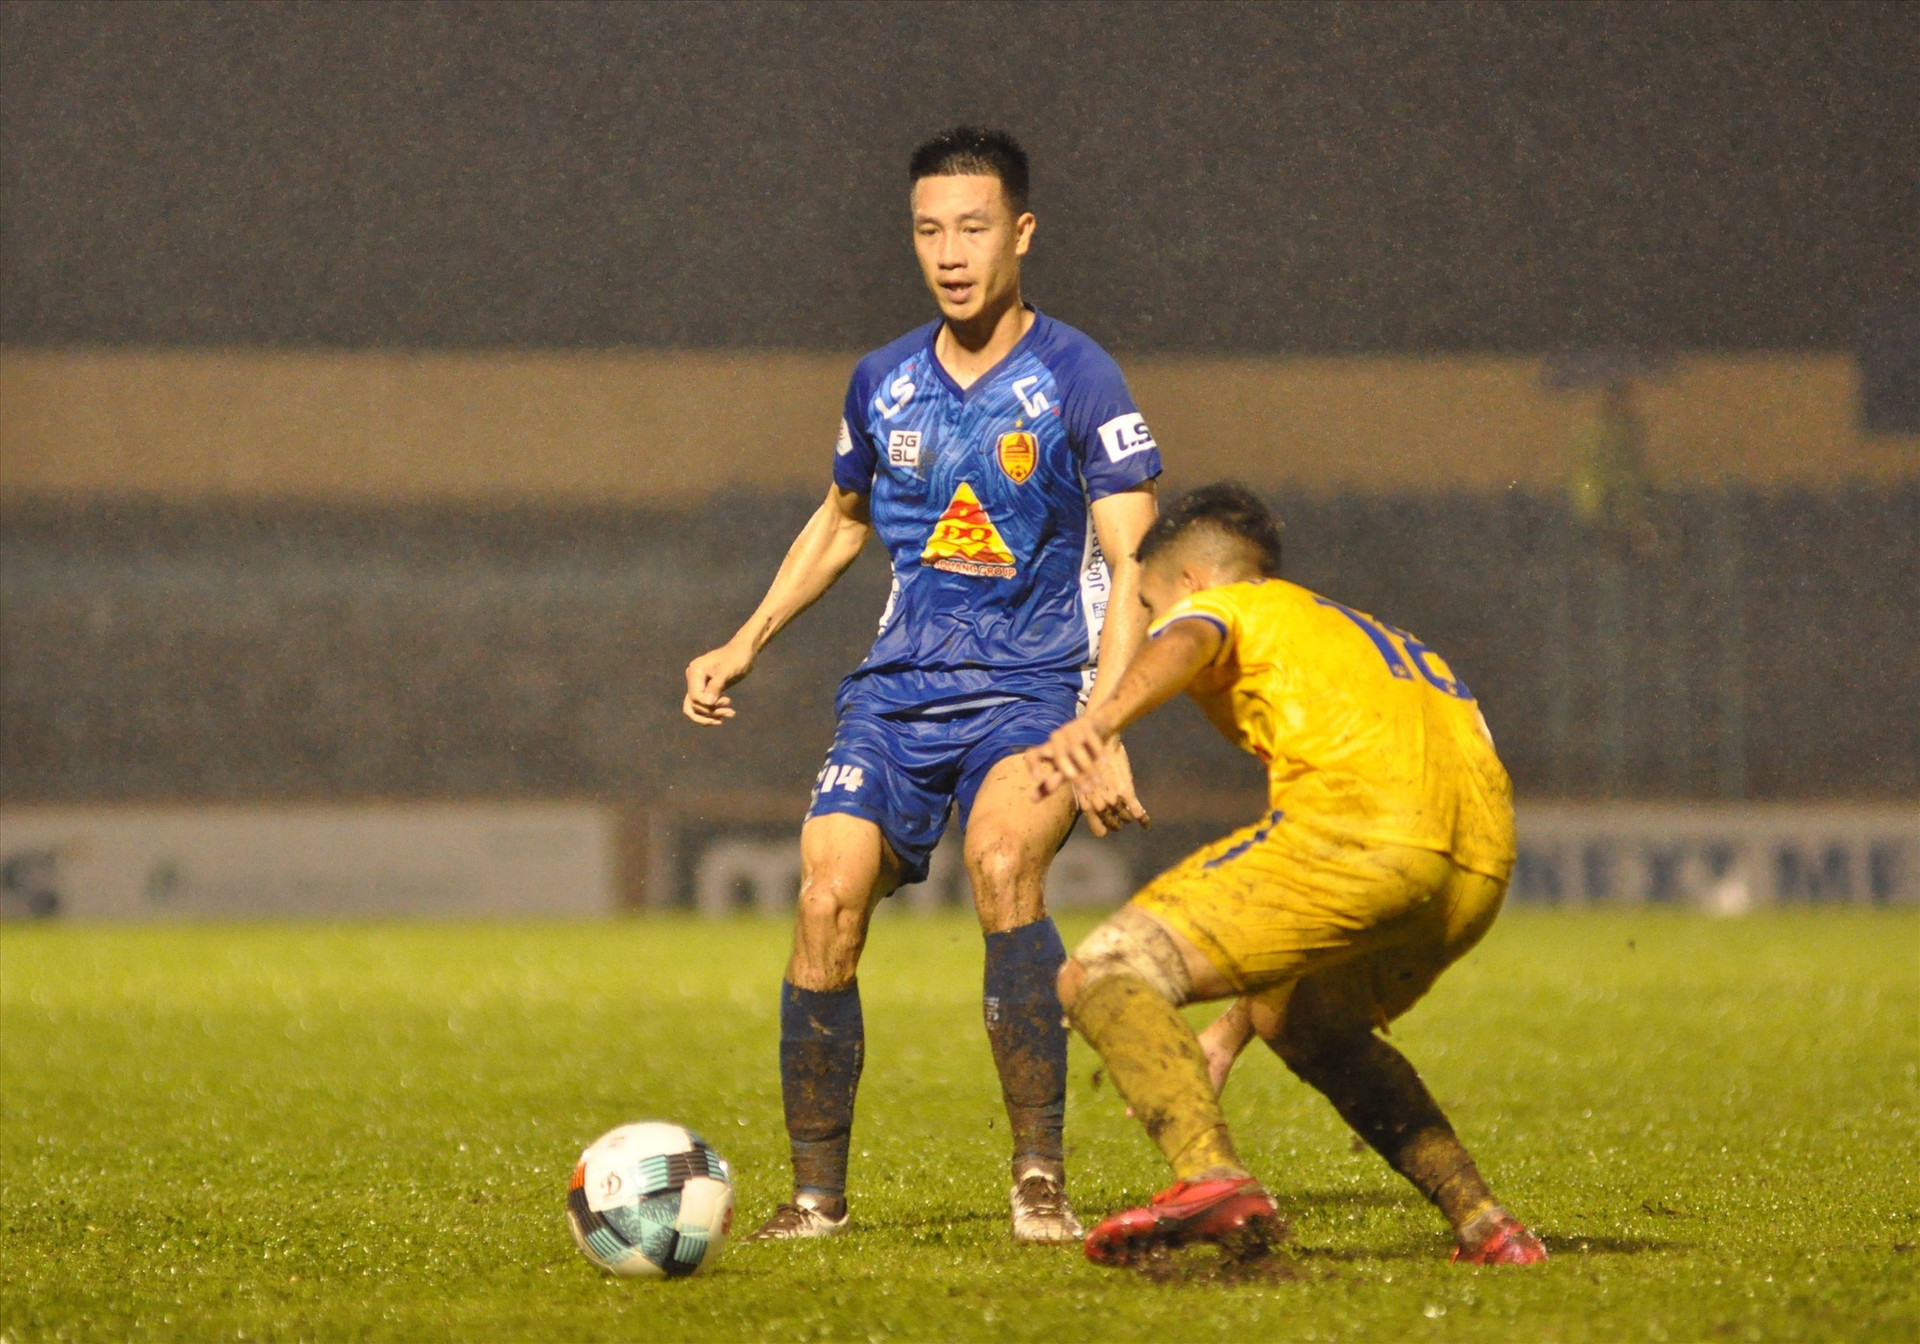 Tuyển thủ quốc gia Huy Hùng (bên trái) sẽ cùng với Quảng Nam xuống chơi ở giải hạng nhất 2021. Ảnh: A.S